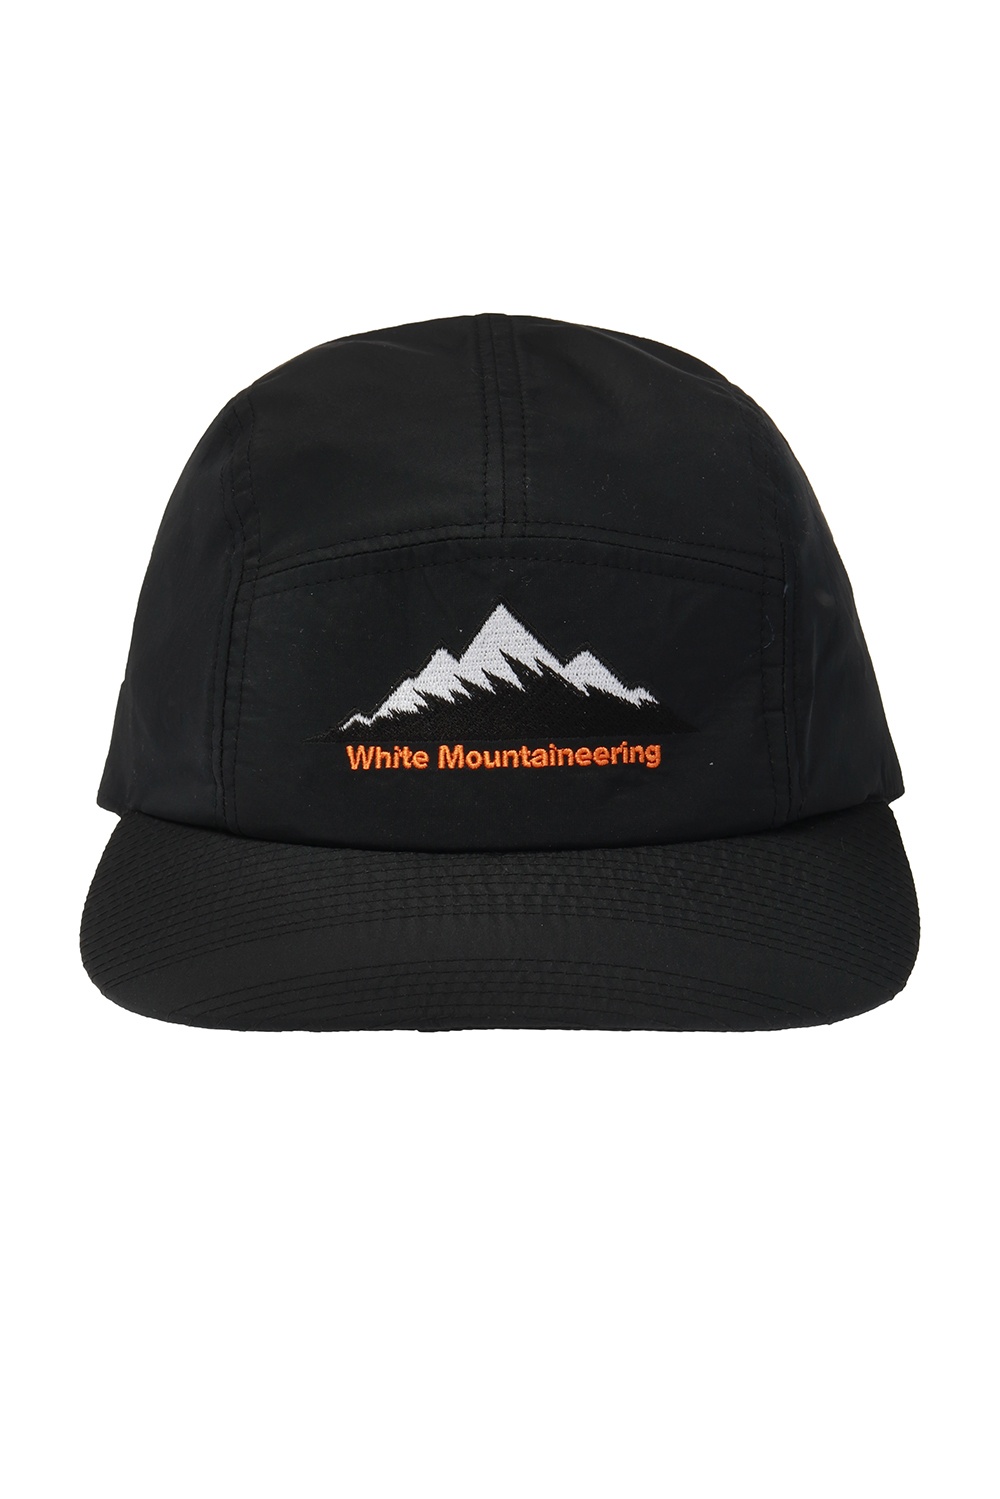 adidas white mountaineering cap